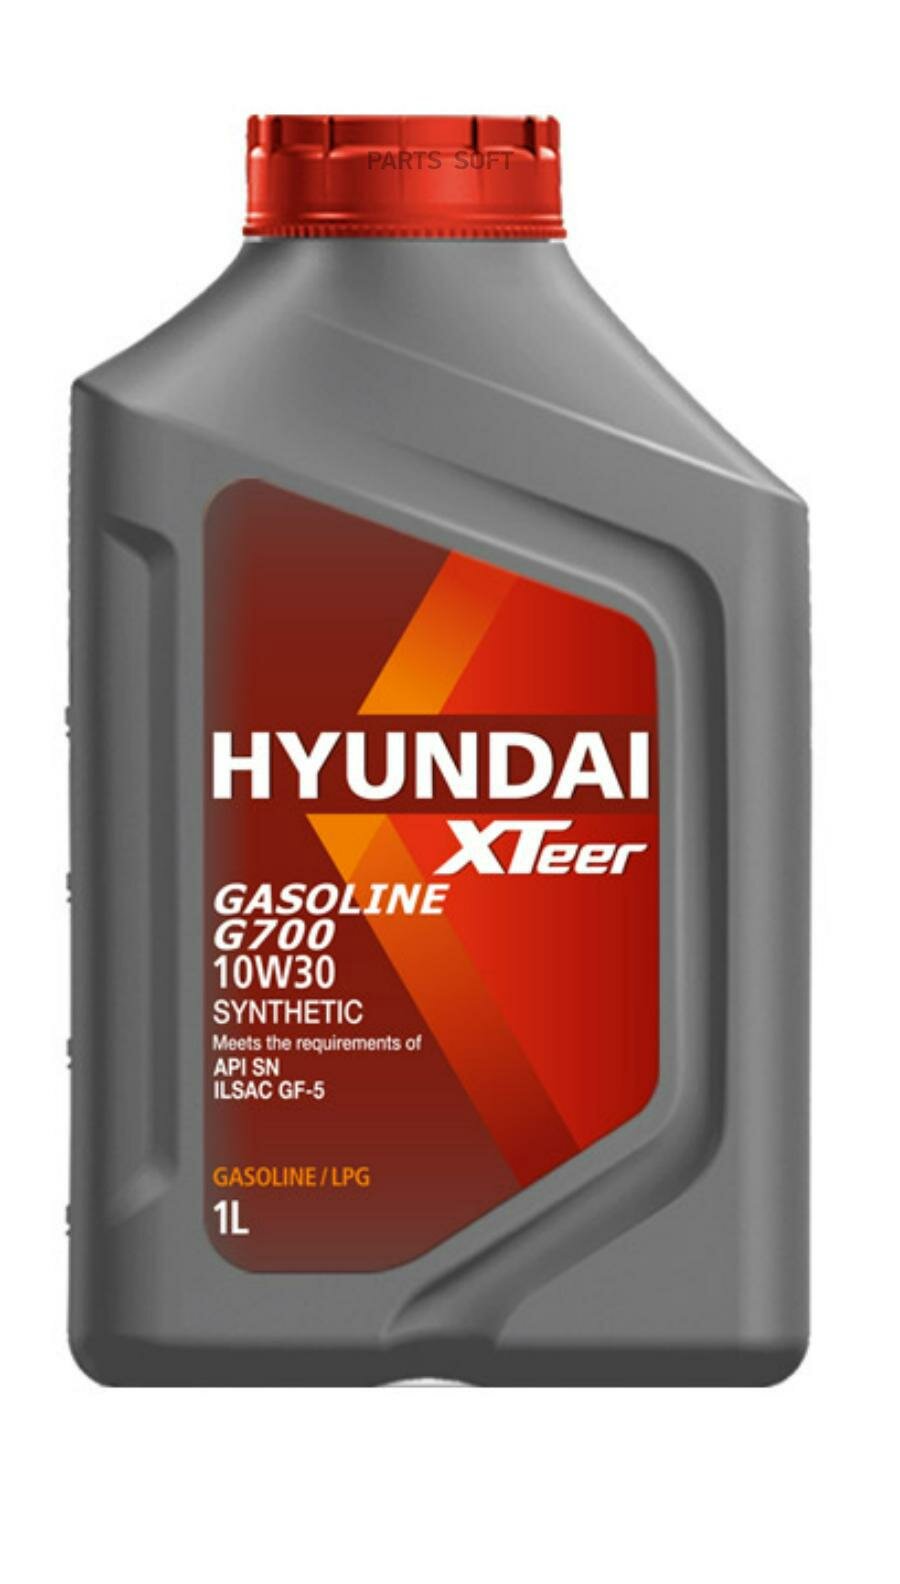 HYUNDAI-XTEER 1011008 HYUNDAI XTeer Gasoline G700 10W30 (1L)_масло моторн.! синт.\ API SP, ILSAC GF-5, GF-6